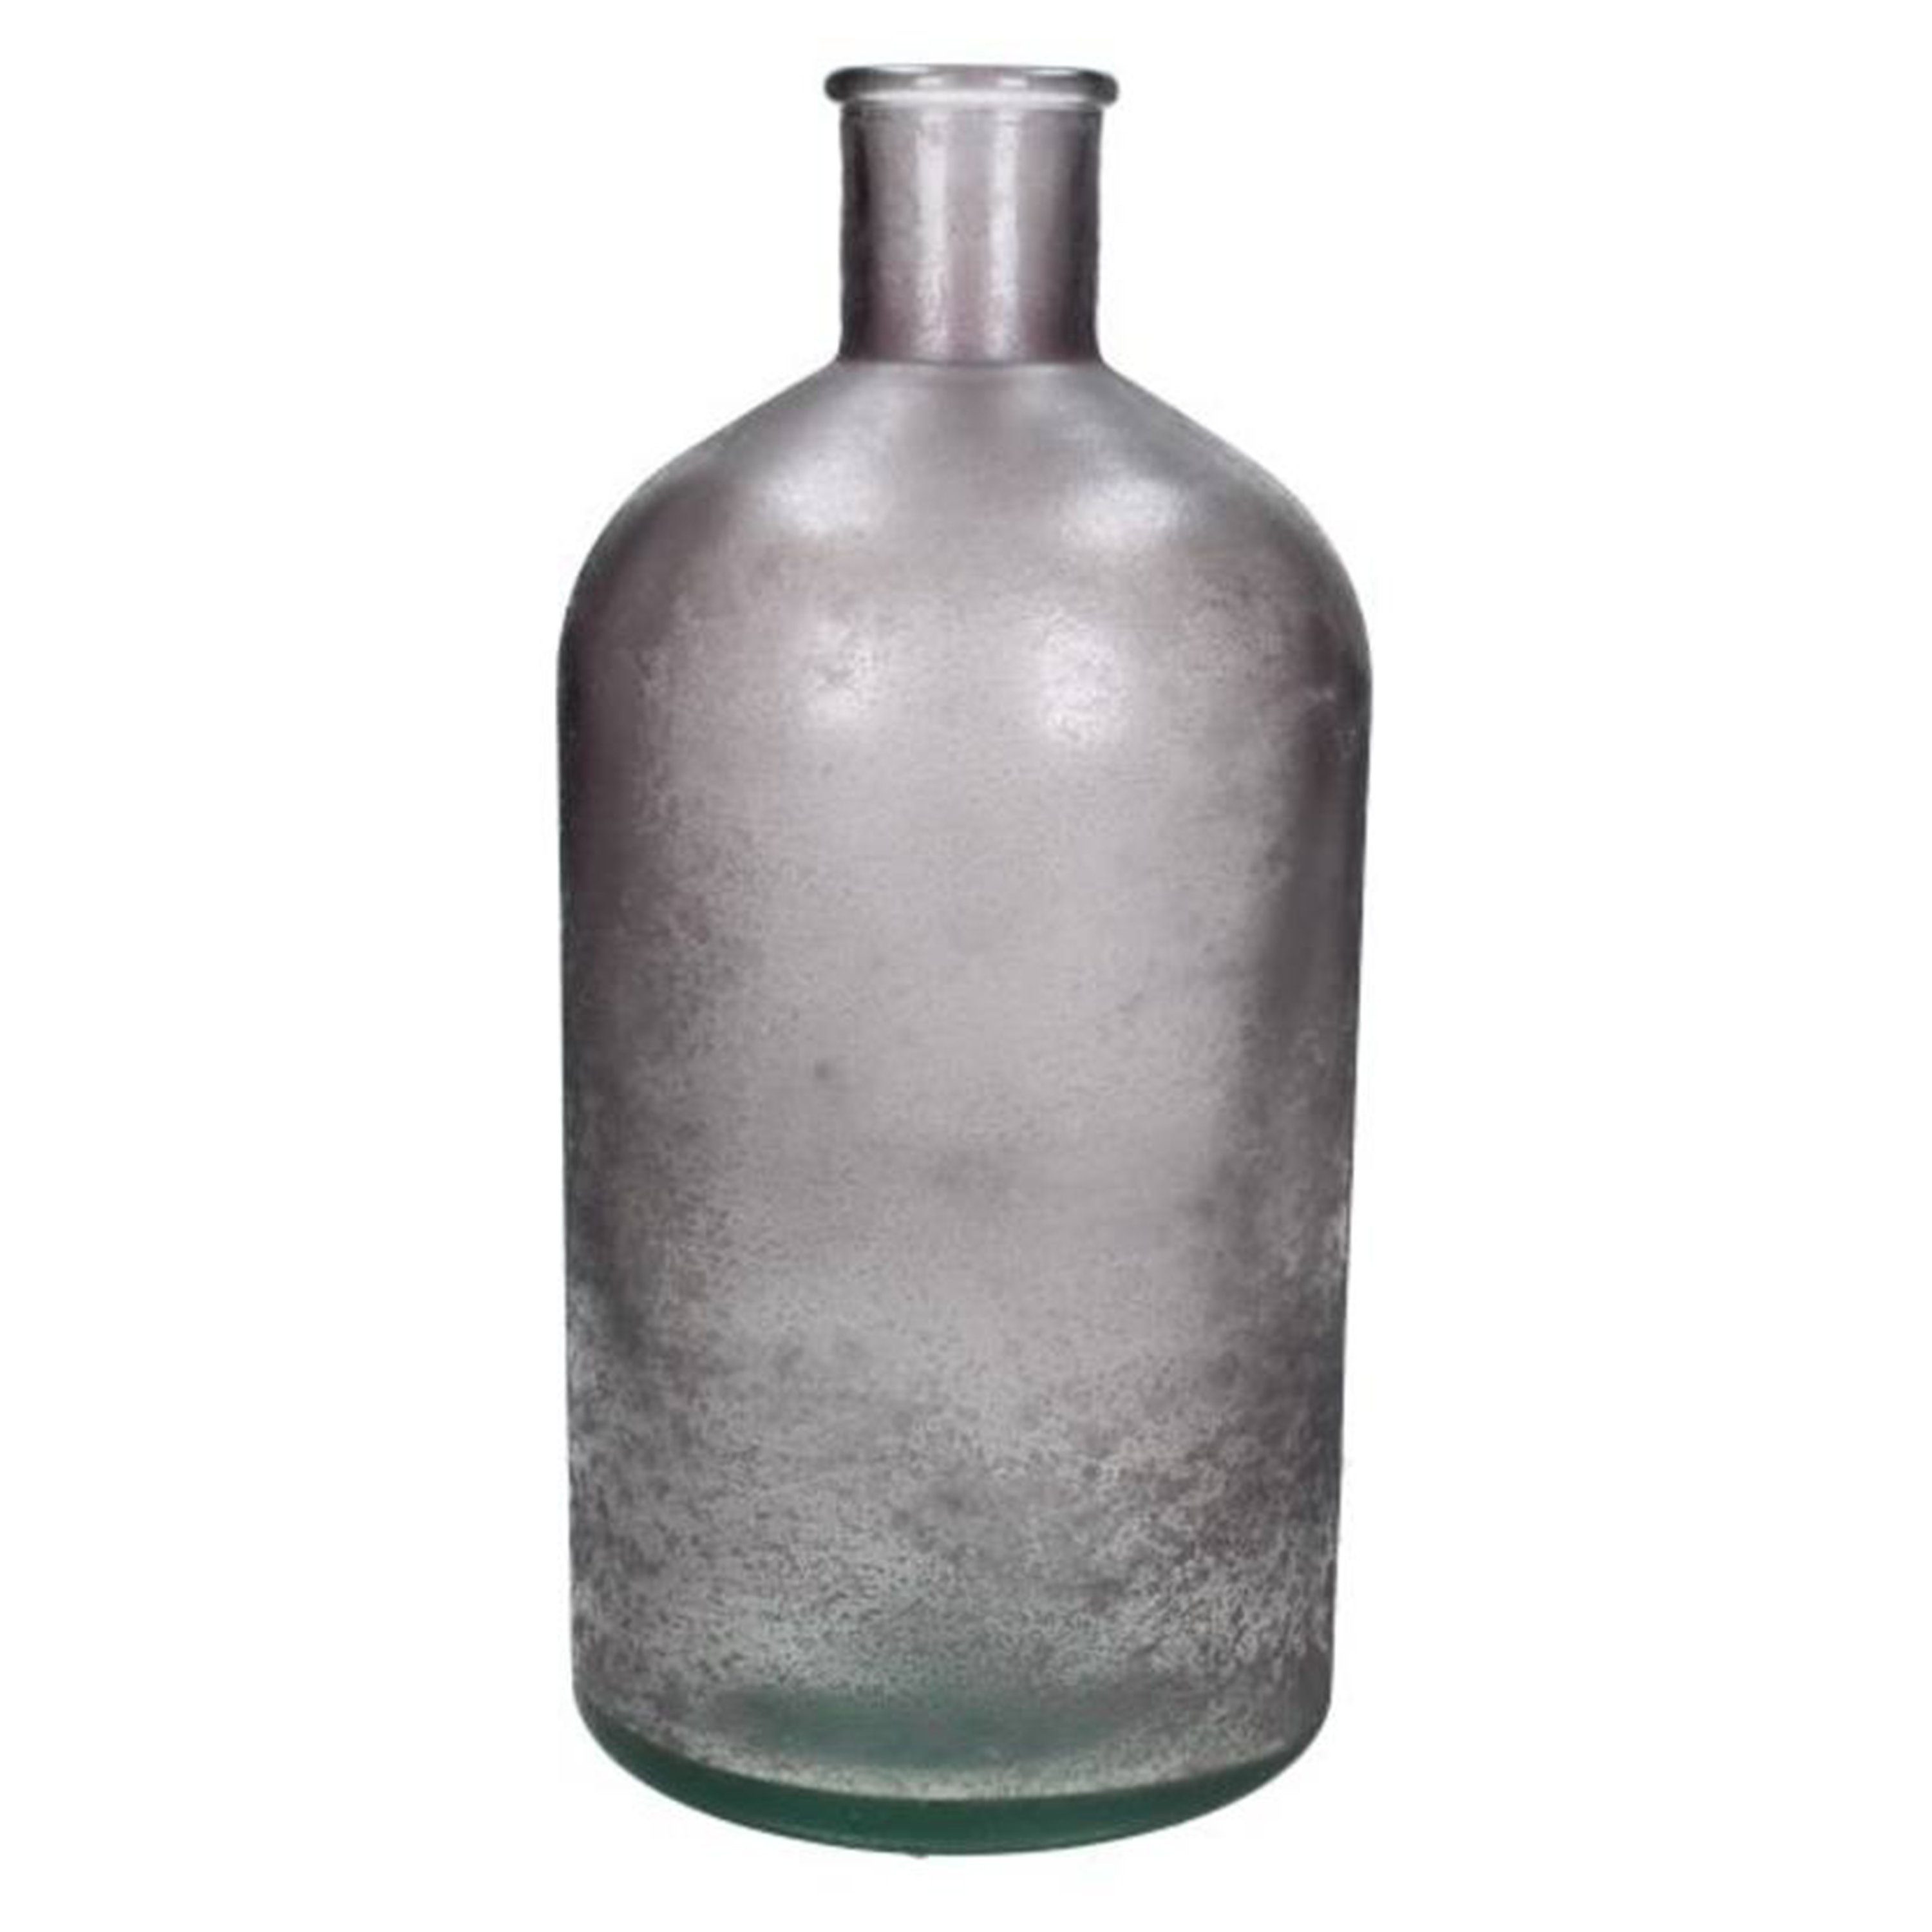 HD Collection Dekovase Glas, Dekoration Kersten Vase purple, Secondlove, Vintage, Dekovase, Flaschenvase, aus recyceltem